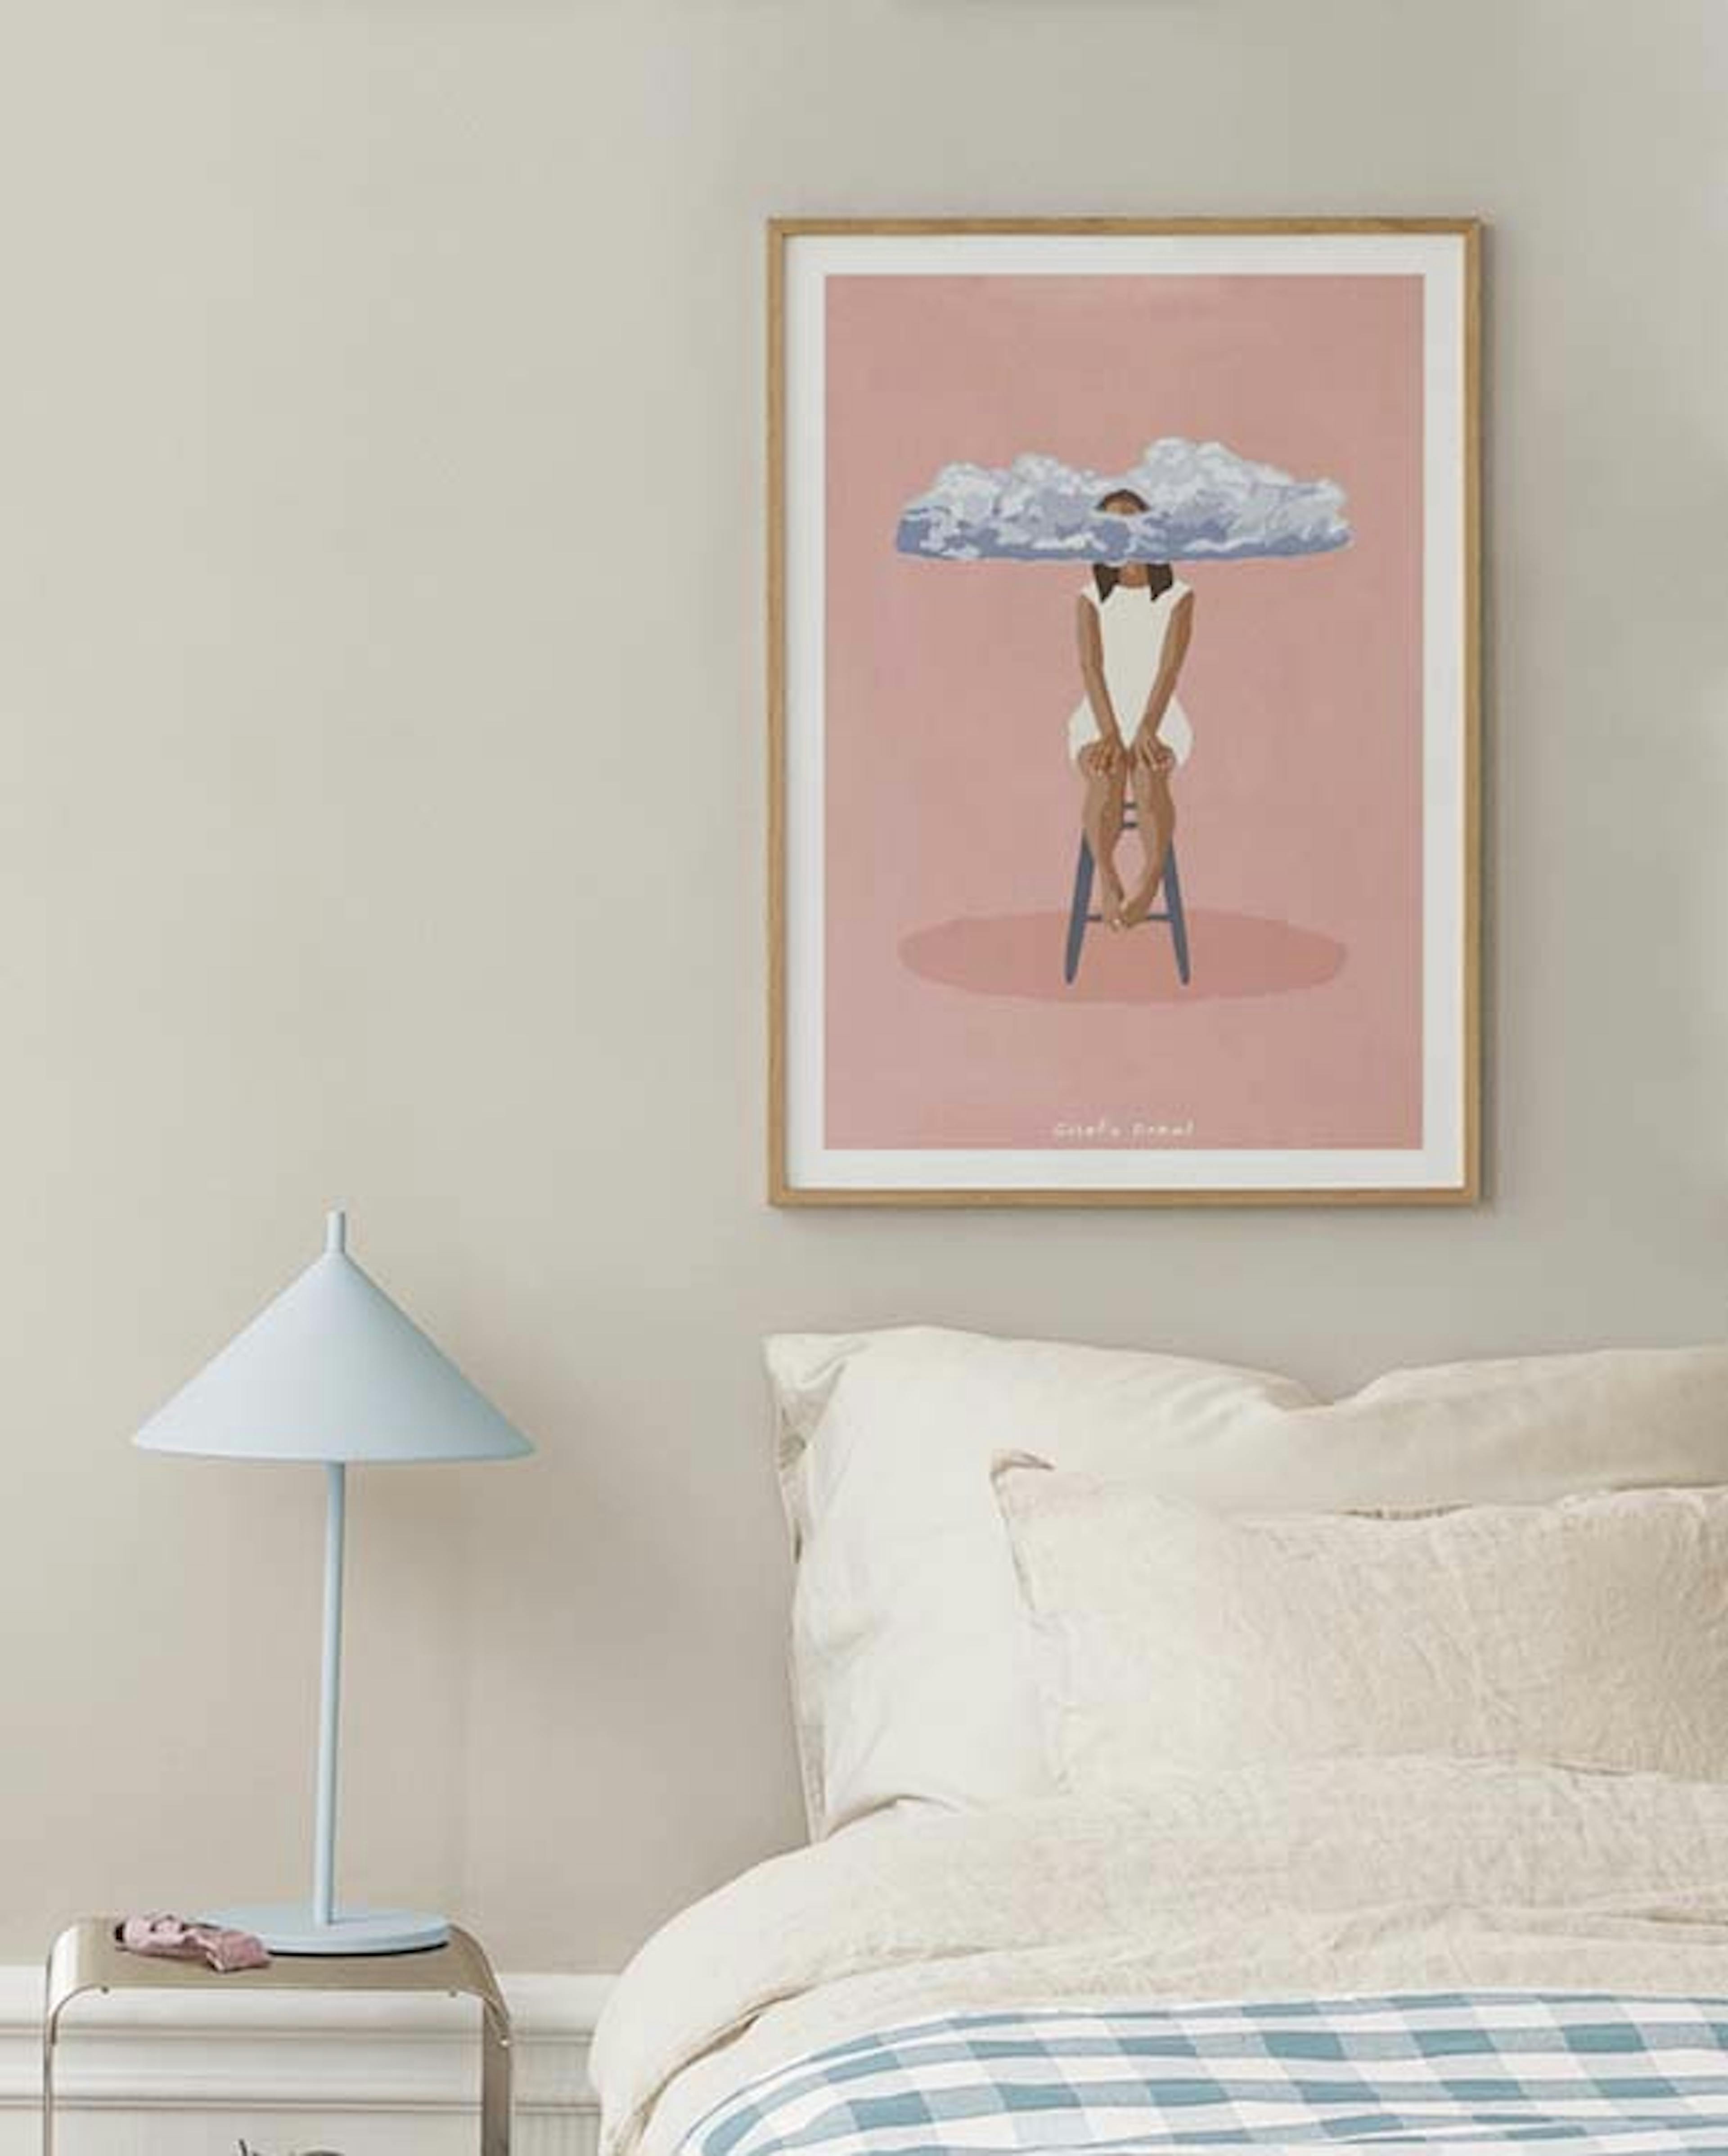 Giselle Dekel – Pink Meditation Poster